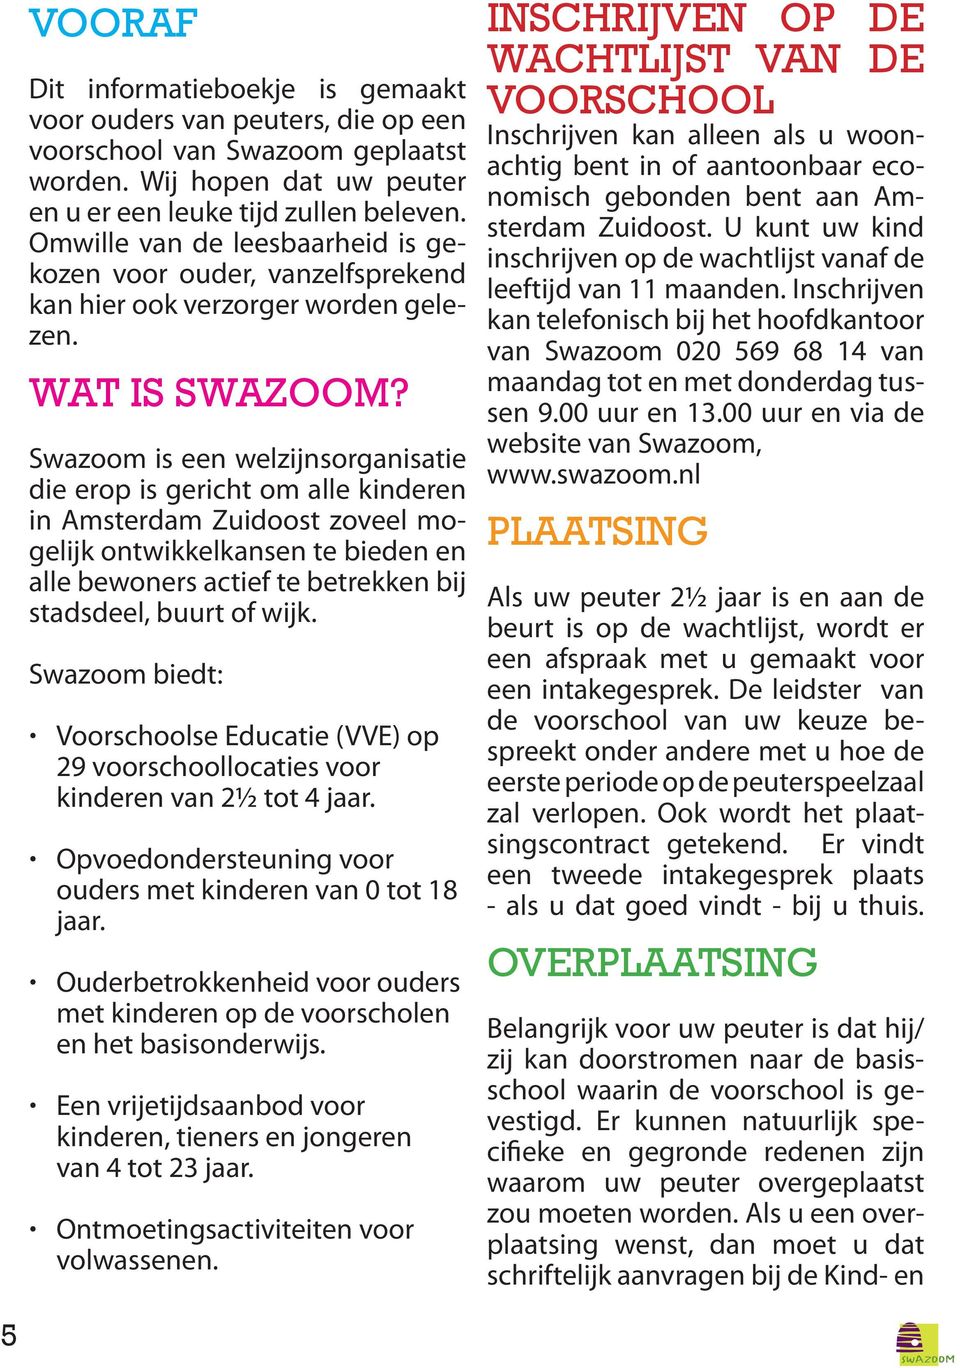 Swazoom is een welzijnsorganisatie die erop is gericht om alle kinderen in Amsterdam Zuidoost zoveel mogelijk ontwikkelkansen te bieden en alle bewoners actief te betrekken bij stadsdeel, buurt of